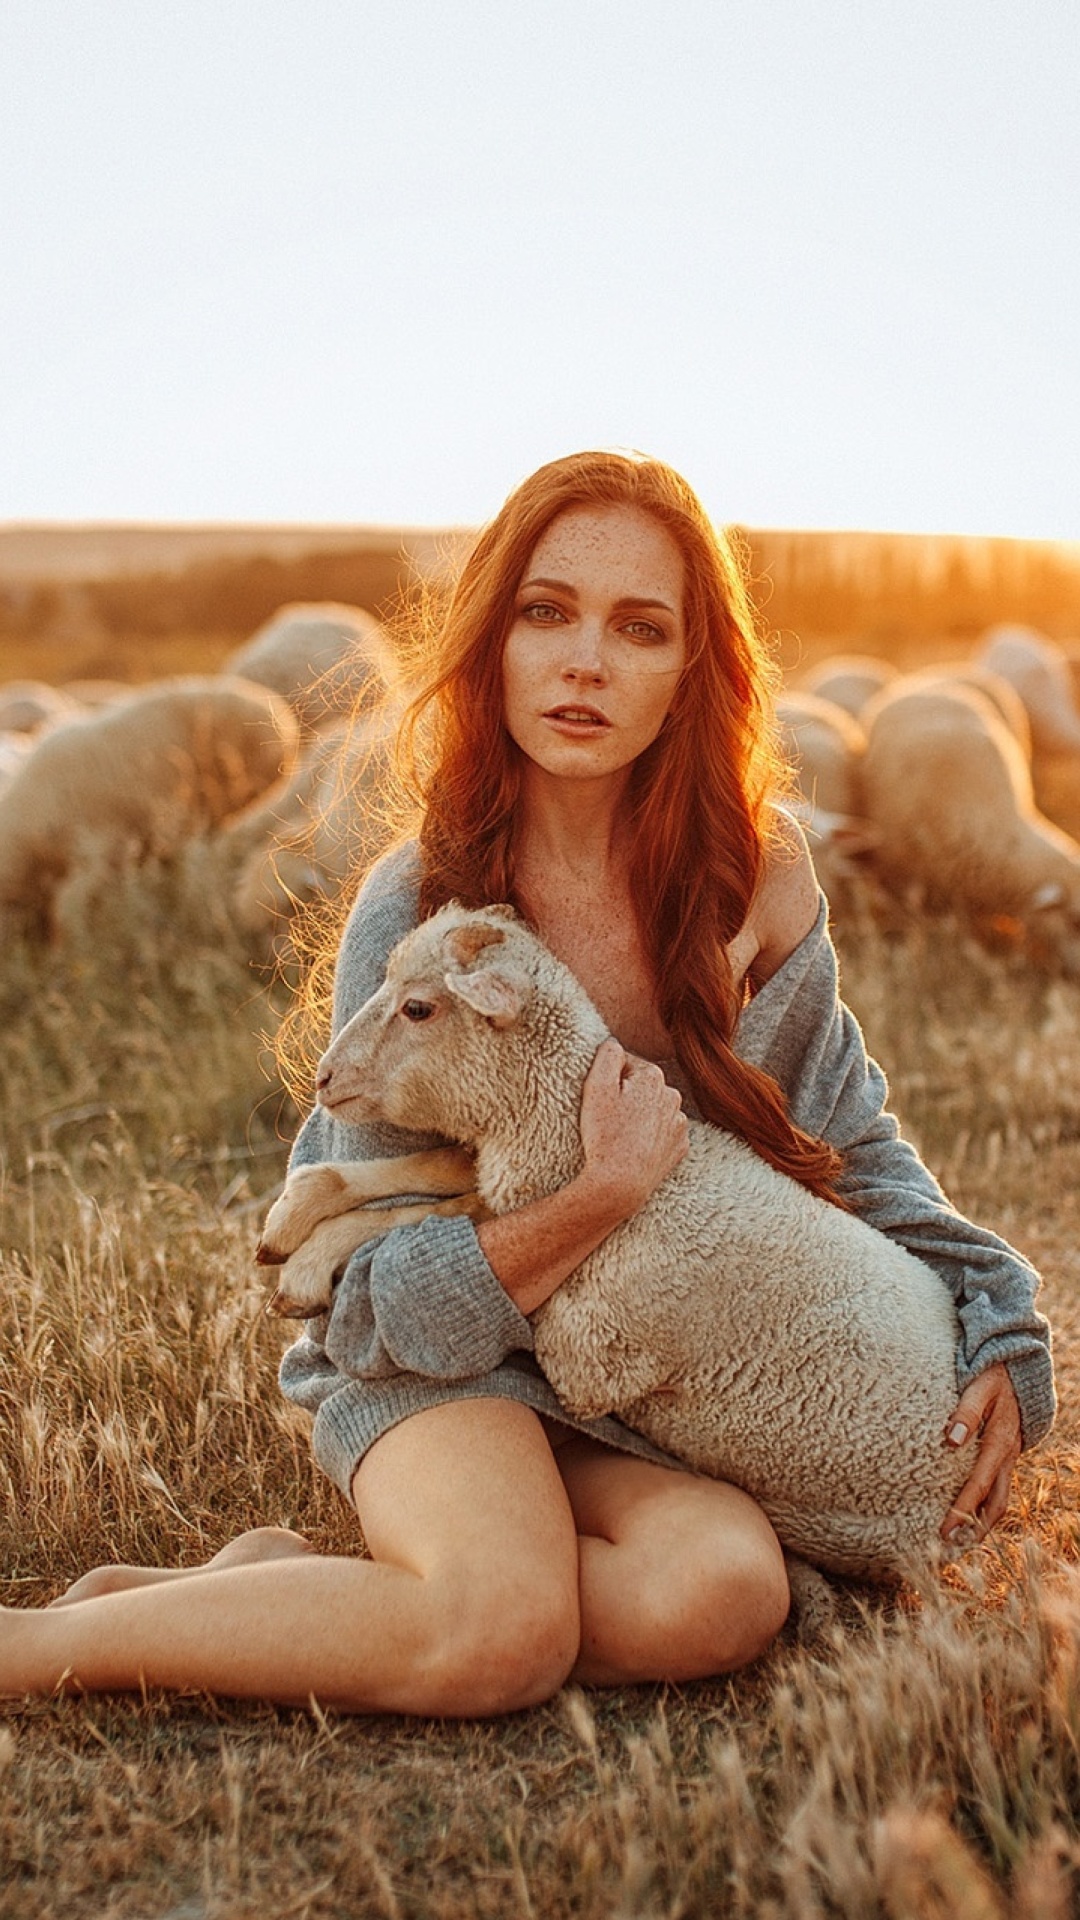 Das Girl with Sheep Wallpaper 1080x1920